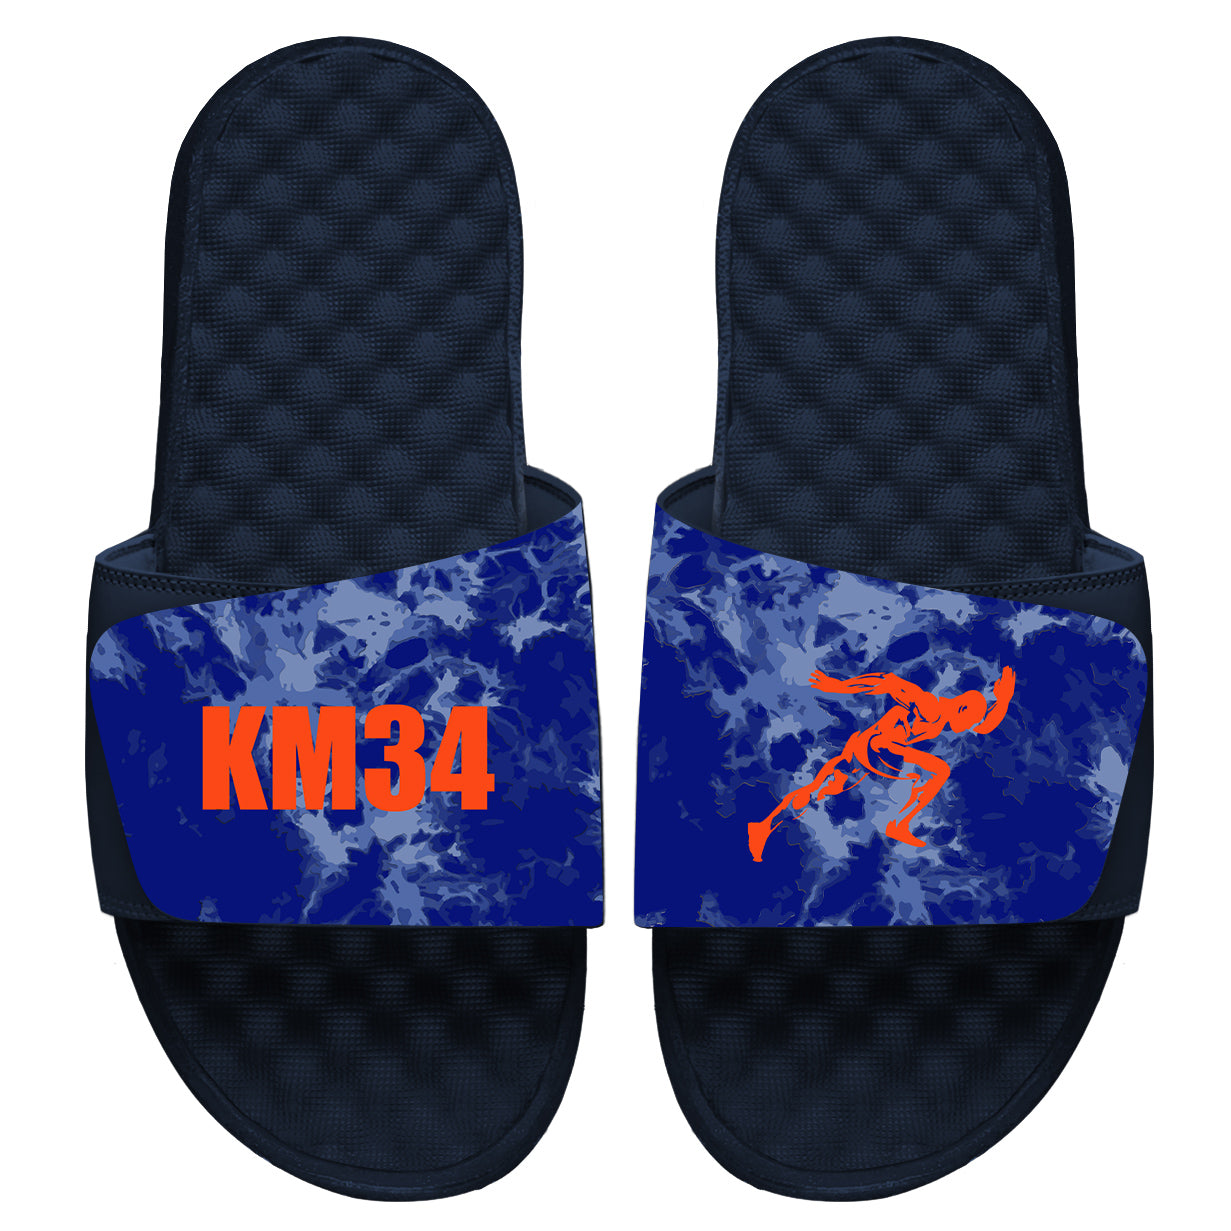 KM34 Slides